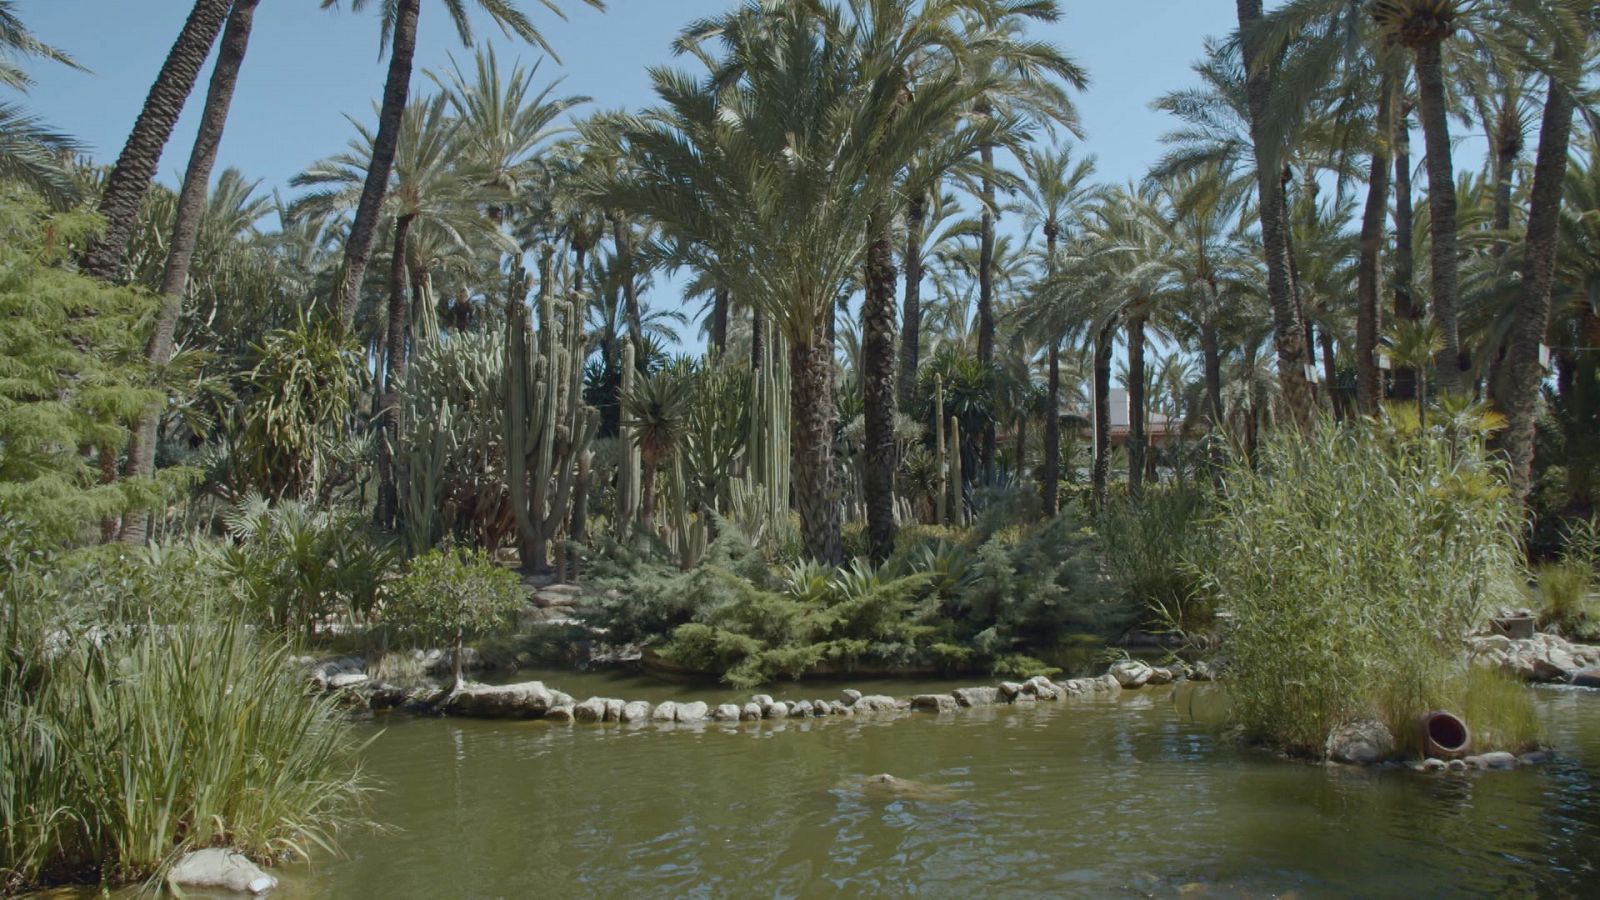 Jardines con historia - Alicante: Palmeral de Elche - ver ahora